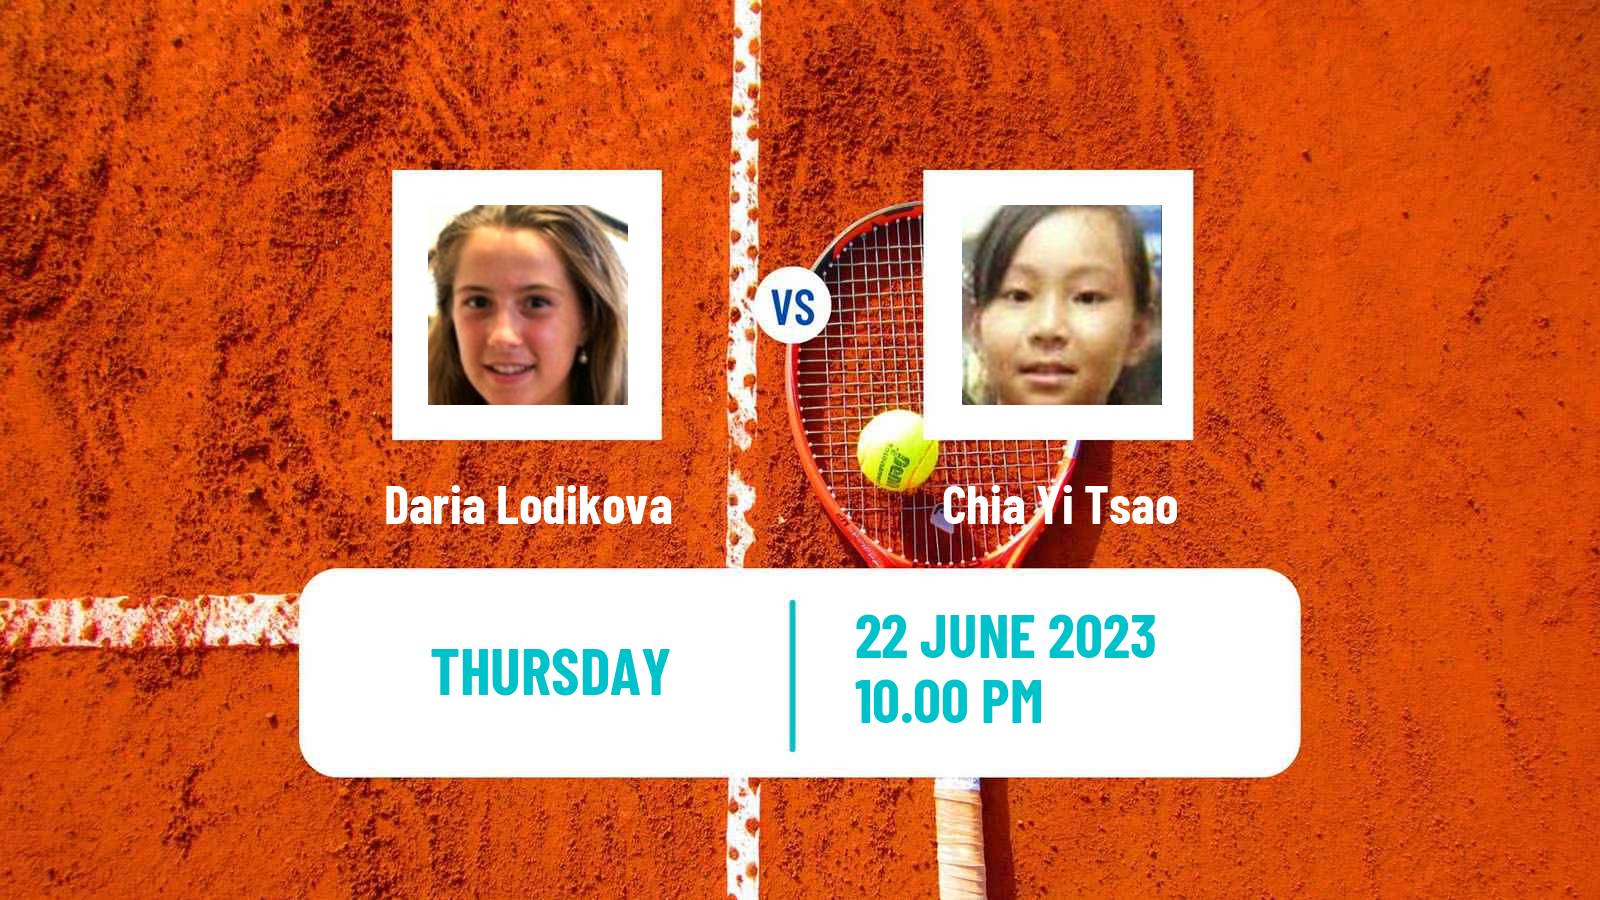 Tennis ITF W25 Tainan 2 Women Daria Lodikova - Chia Yi Tsao